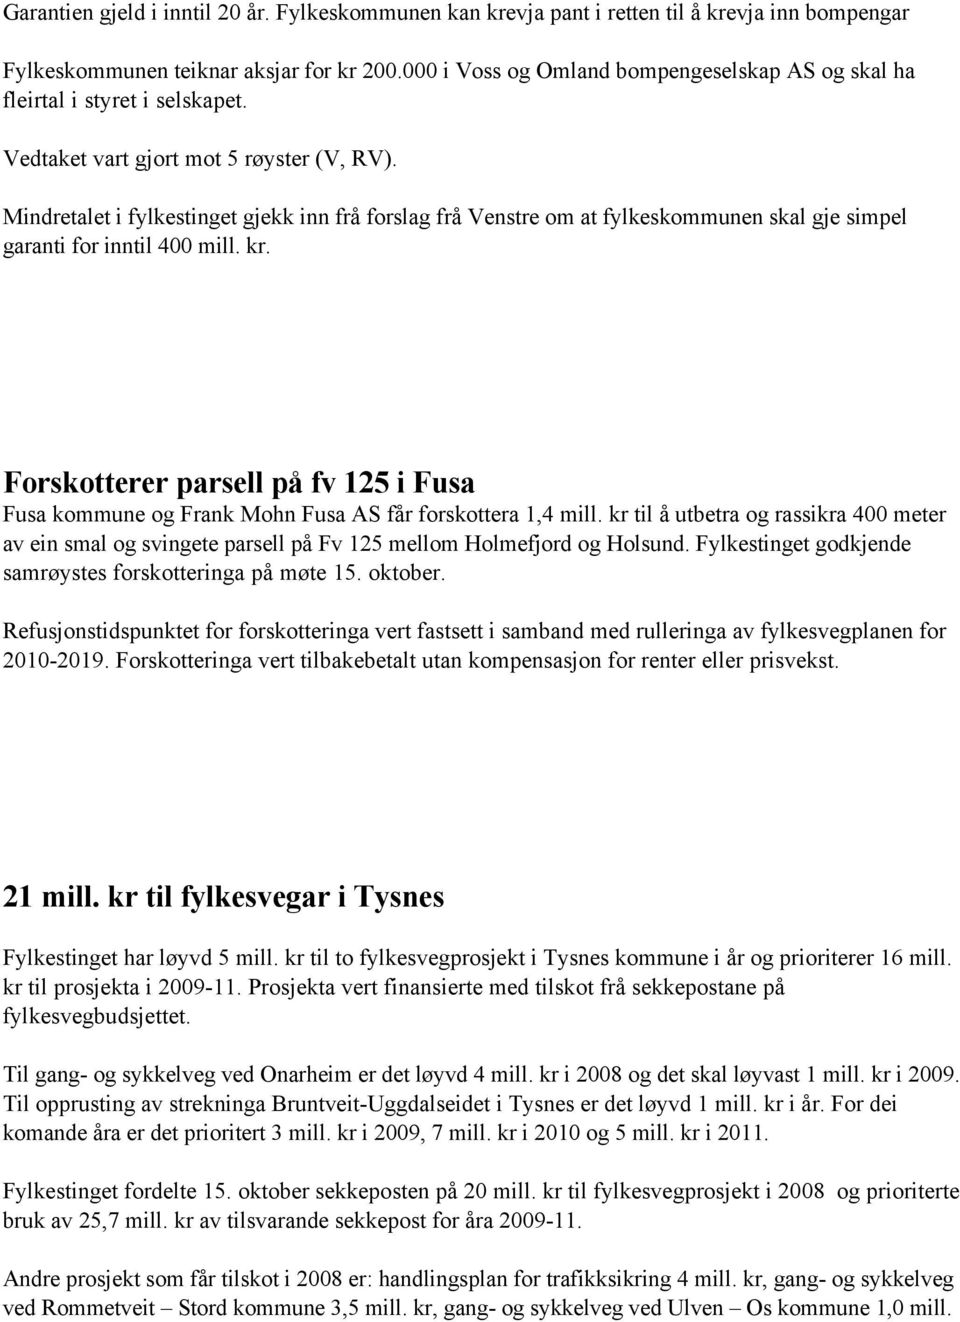 Mindretalet i fylkestinget gjekk inn frå forslag frå Venstre om at fylkeskommunen skal gje simpel garanti for inntil 400 mill. kr.